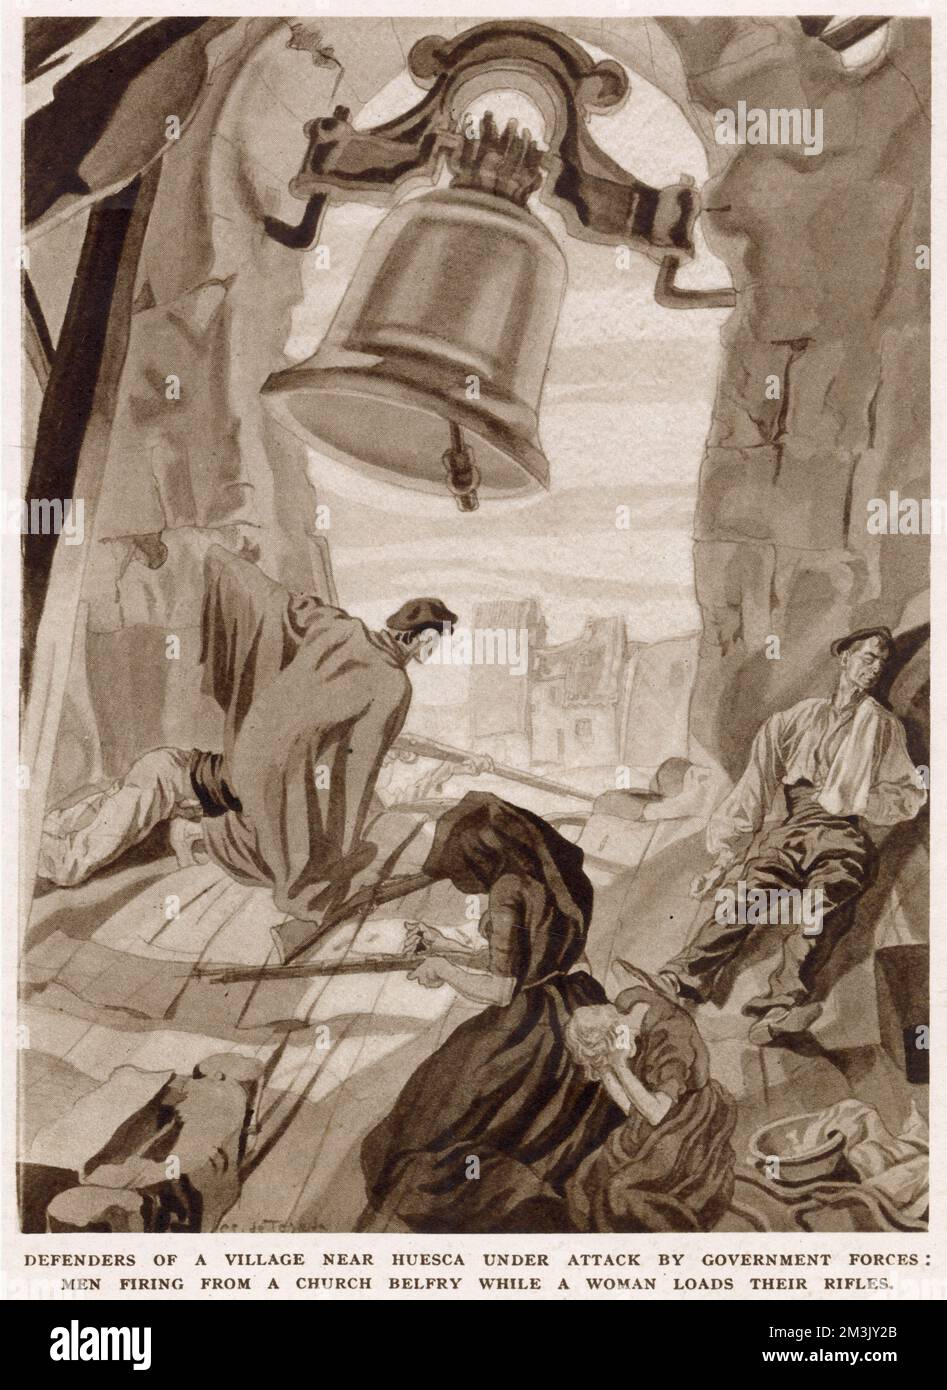 Zwei nationalistische Soldaten feuerten ihre Waffen von einem Glockenturm aus, während eine Frau ihre Gewehre nachlud, während des Spanischen Bürgerkriegs 1937. Diese Illustration wurde von einem nationalistischen Unterstützer in einem Dorf in der Nähe von Huesca angefertigt. Stockfoto